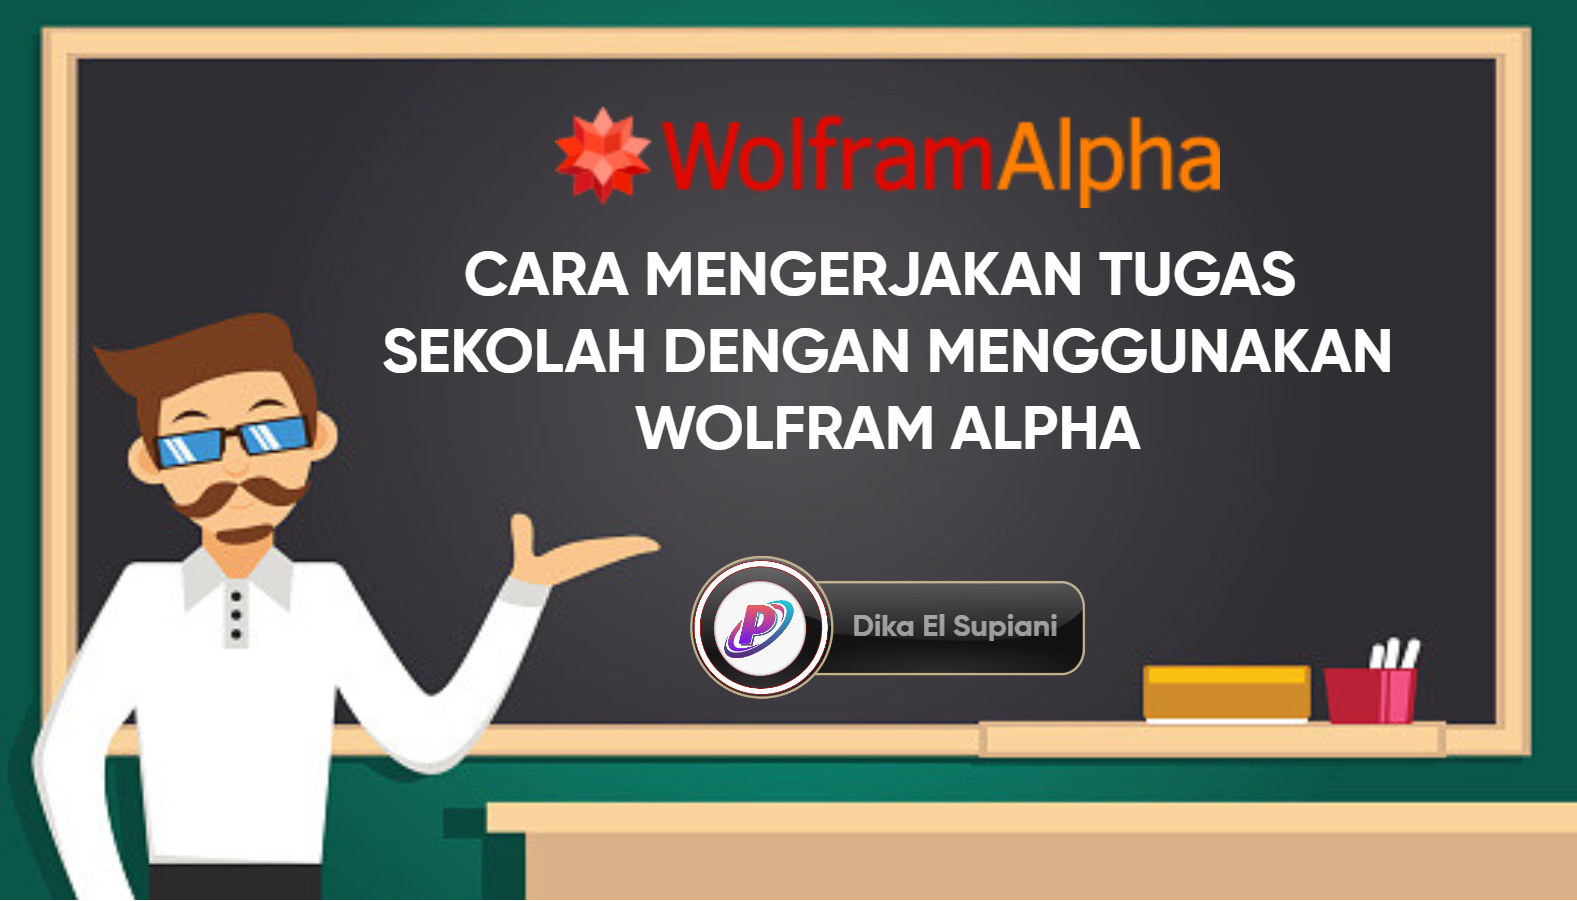 Cara Mengerjakan Tugas Sekolah Dengan Wolfram Alpha